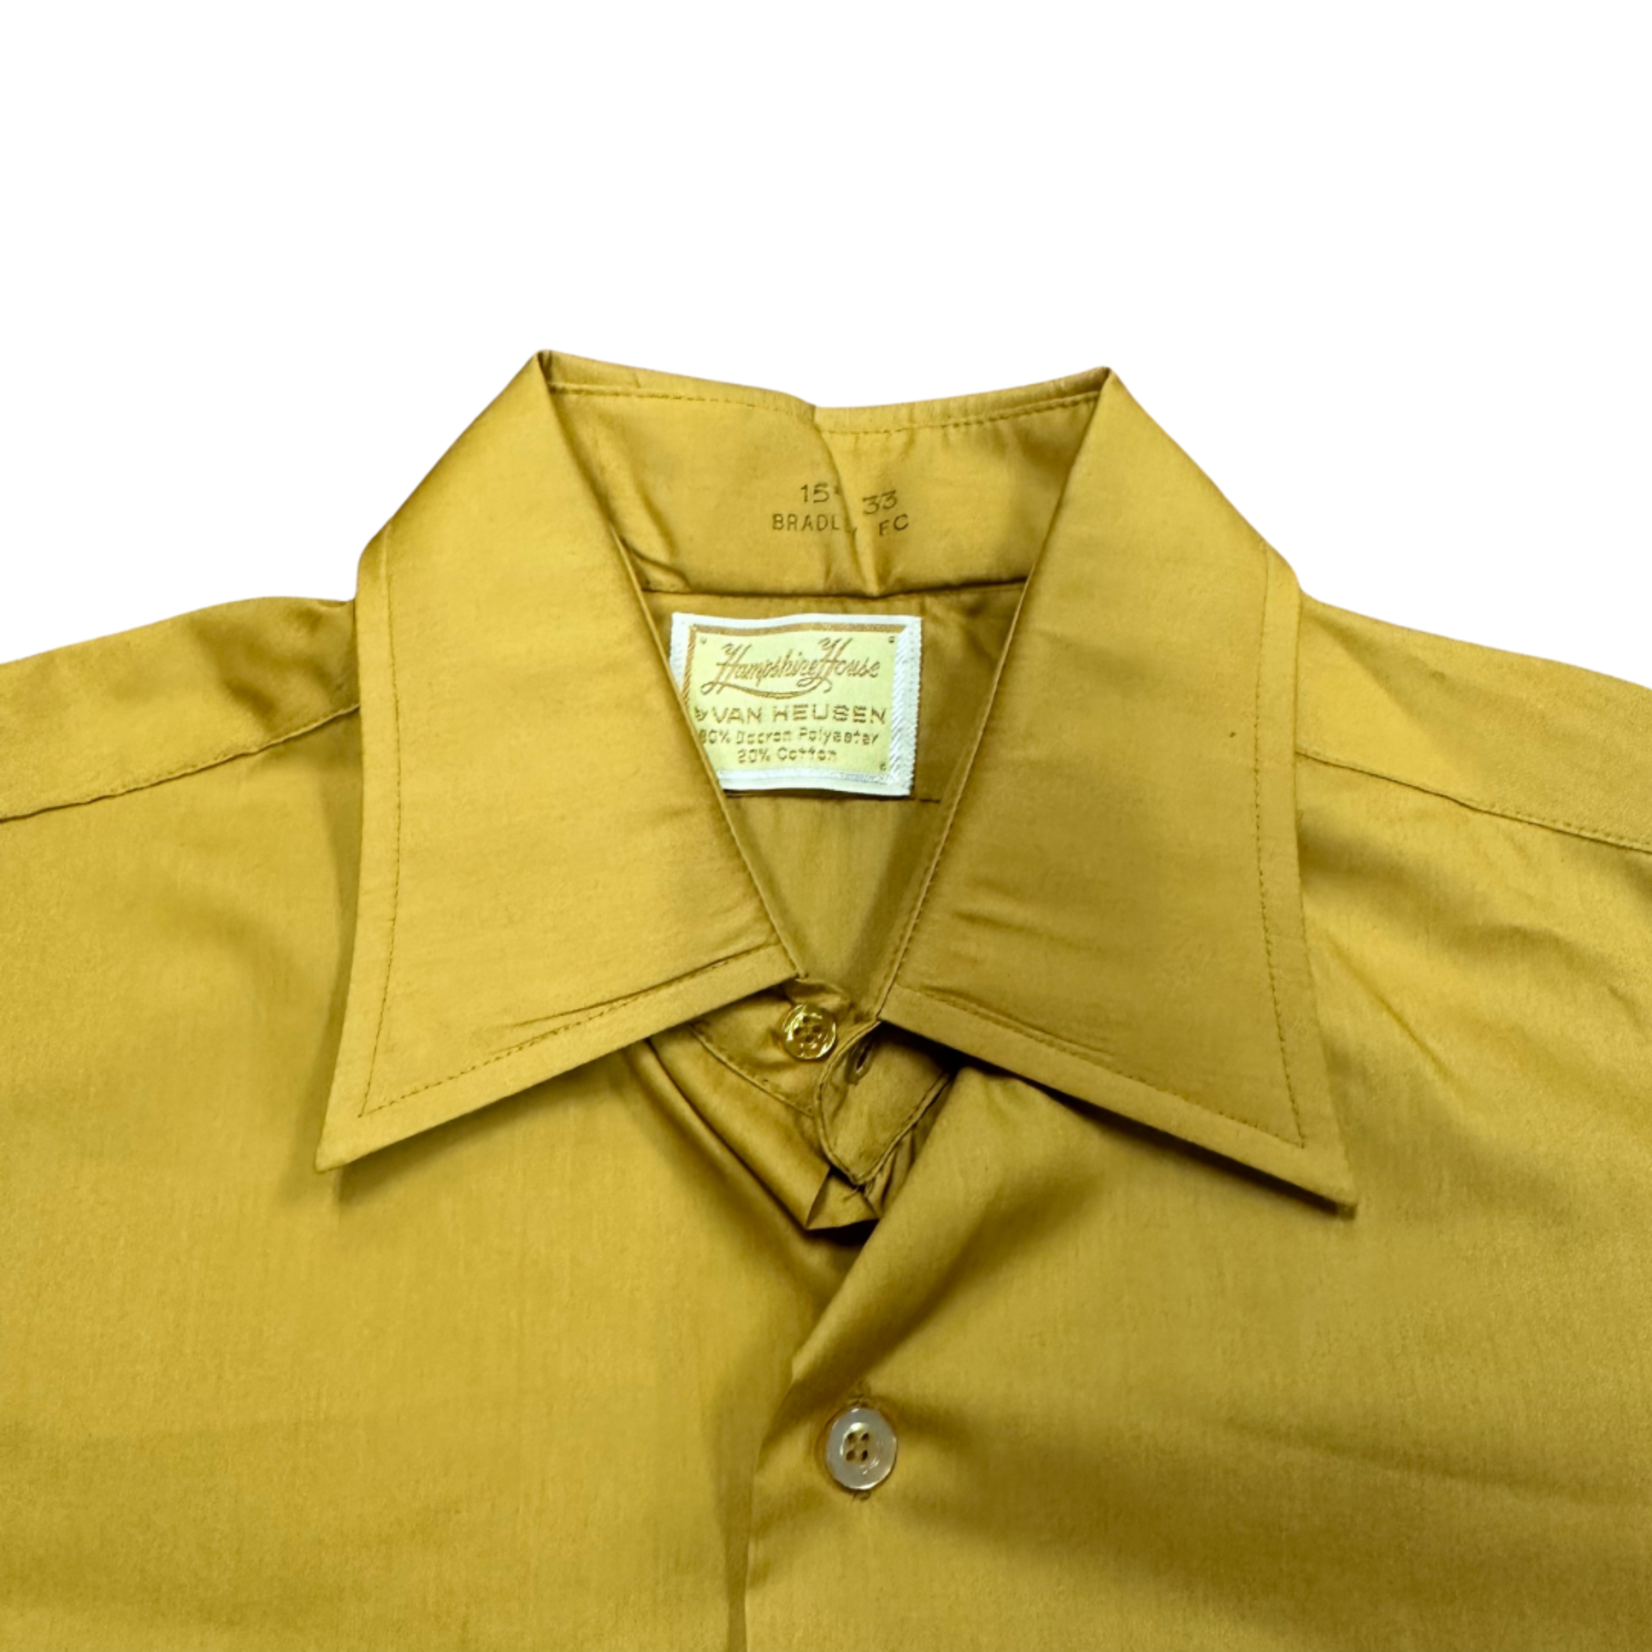 Mission Zero Men's Vintage Dress Shirt -Hampshire House by Van Heusen - M/L